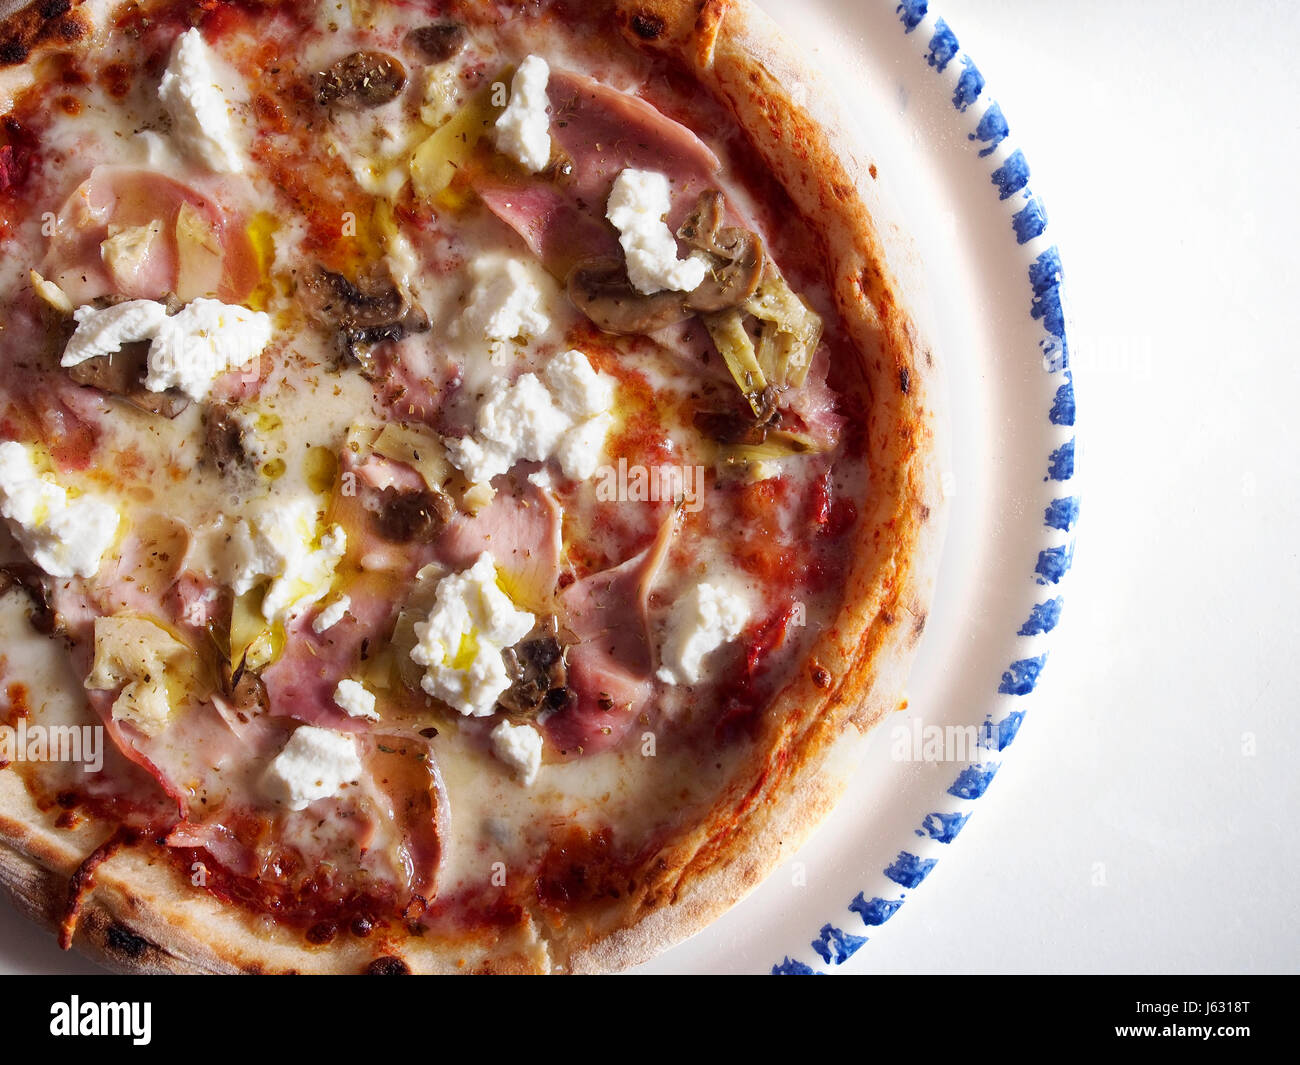 Hausgemachte Pizza Capricciosa Draufsicht In Vegane Version Mit Grausamkeit Kostenlose Zutaten Stockfotografie Alamy